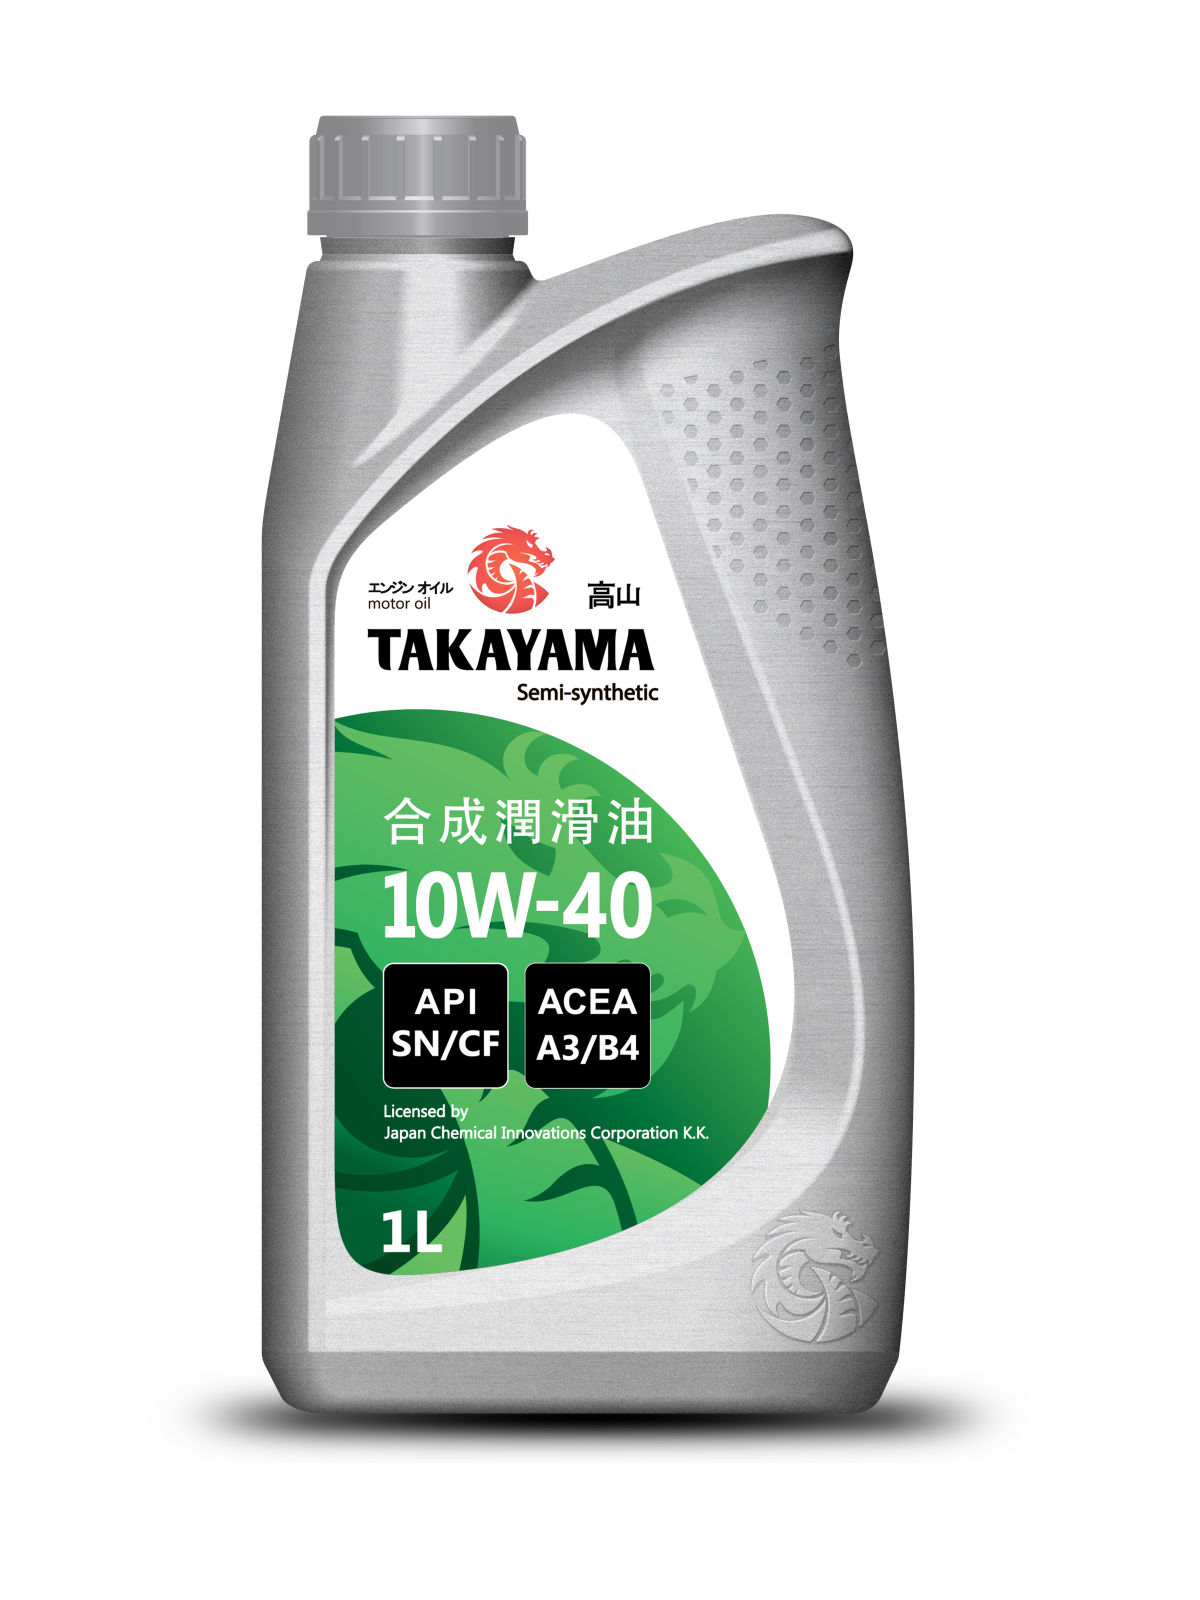 фото Моторное масло takayama sae 10w-40 api sn/сf пластик 1л